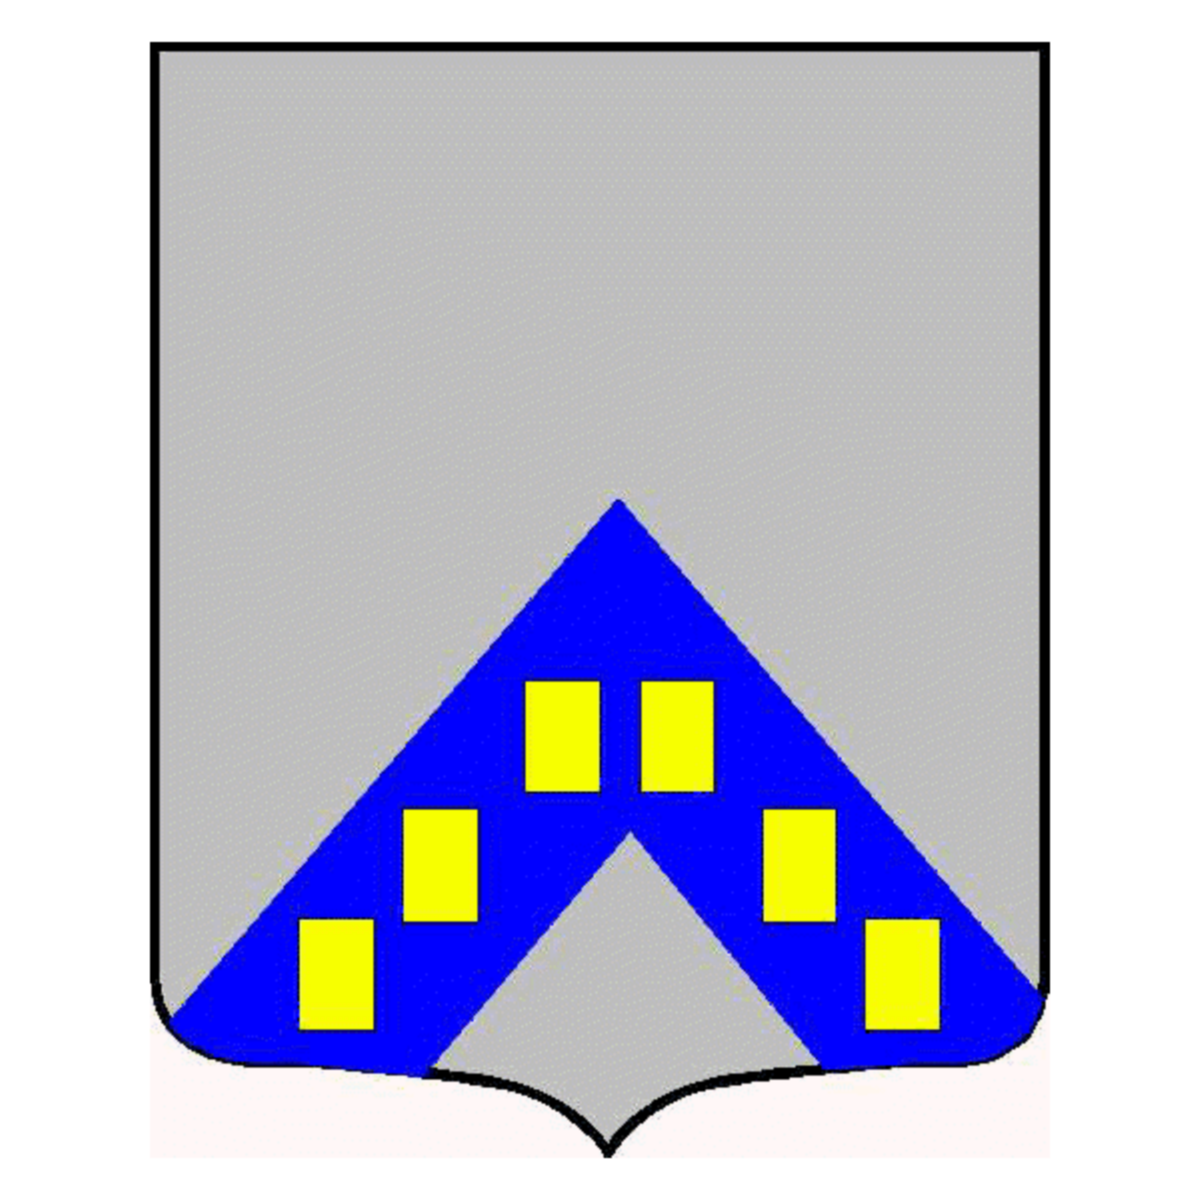 Wappen der Familie